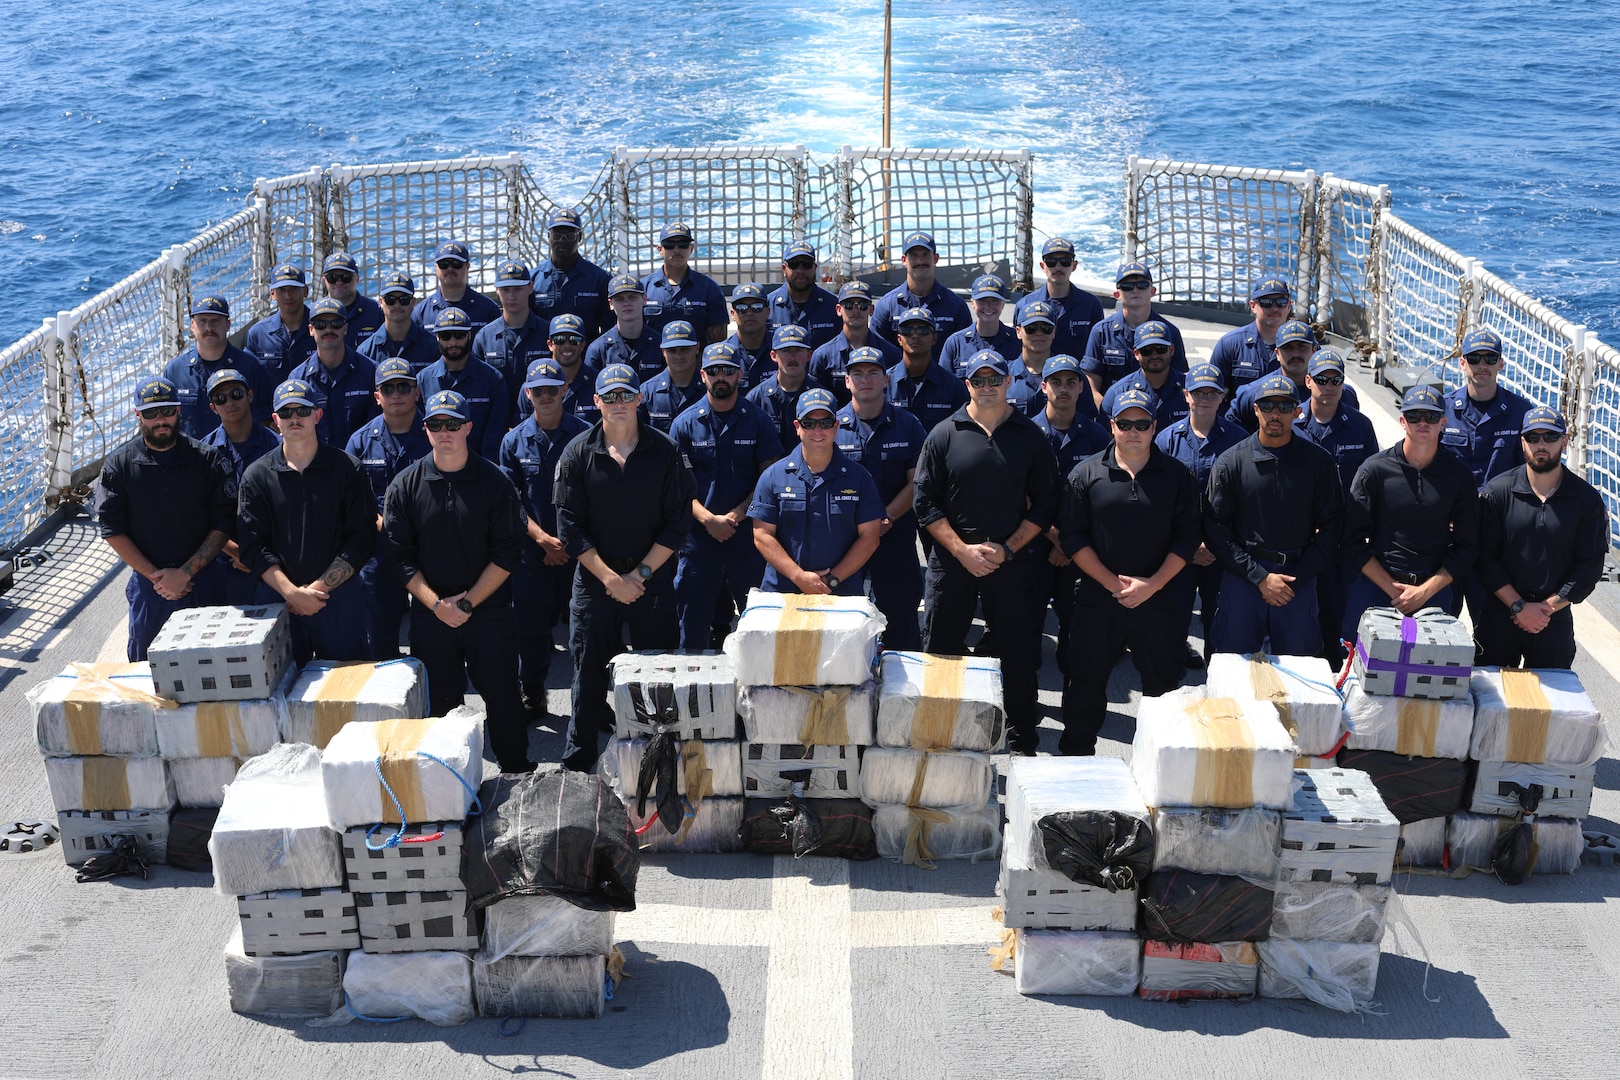 Le garde-côte américain Reliance interdit 57 millions de dollars de drogues illicites lors de son déploiement dans l’océan Pacifique Est